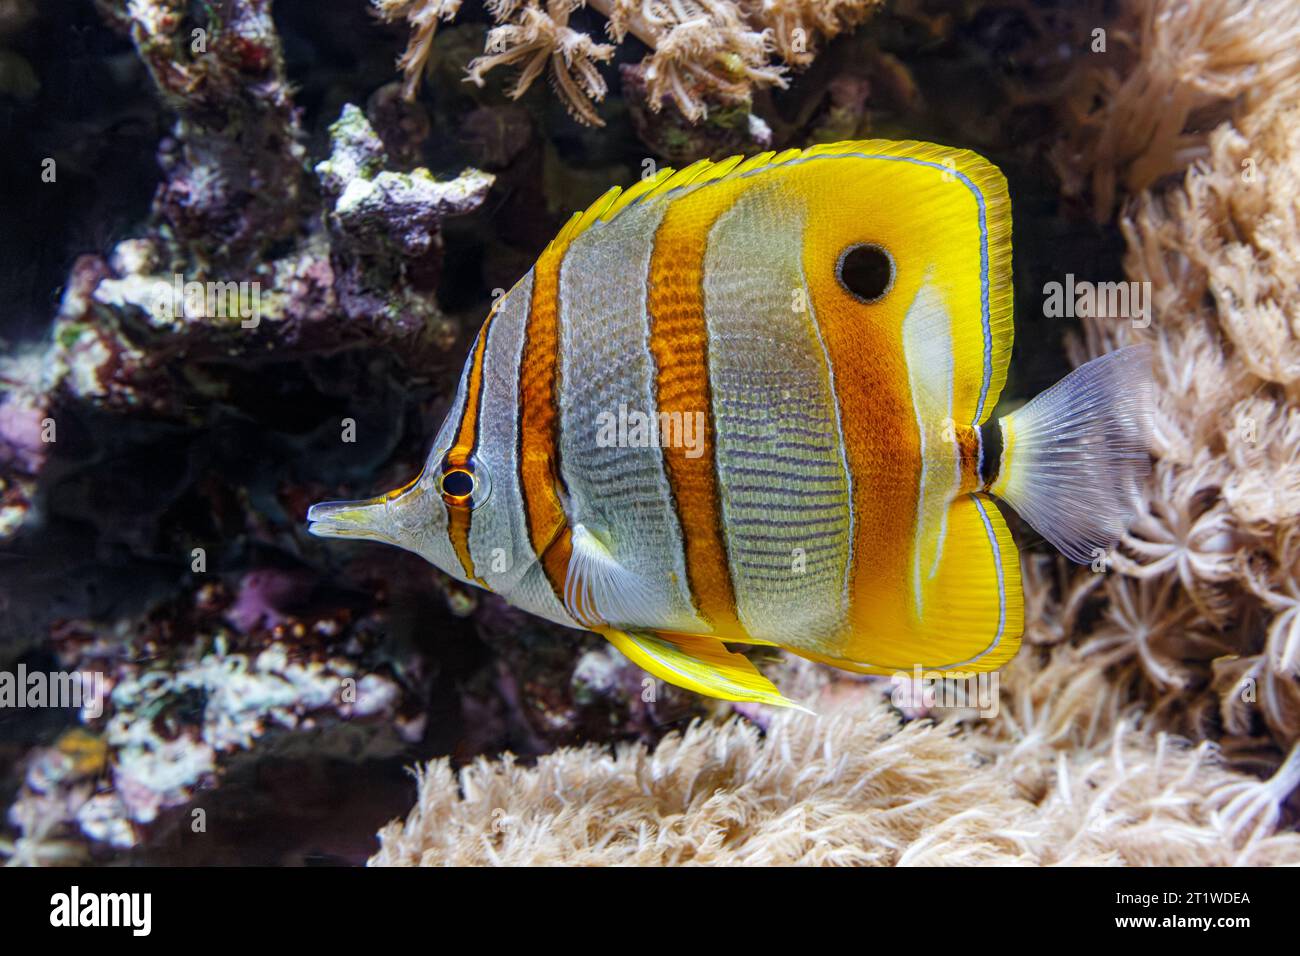 Pesce farfalla a banda di rame (Chelmon rostratus), alias: Pesce corallo al becco, pesce della barriera corallina che si trova negli oceani Pacifico e Indiano. Foto Stock